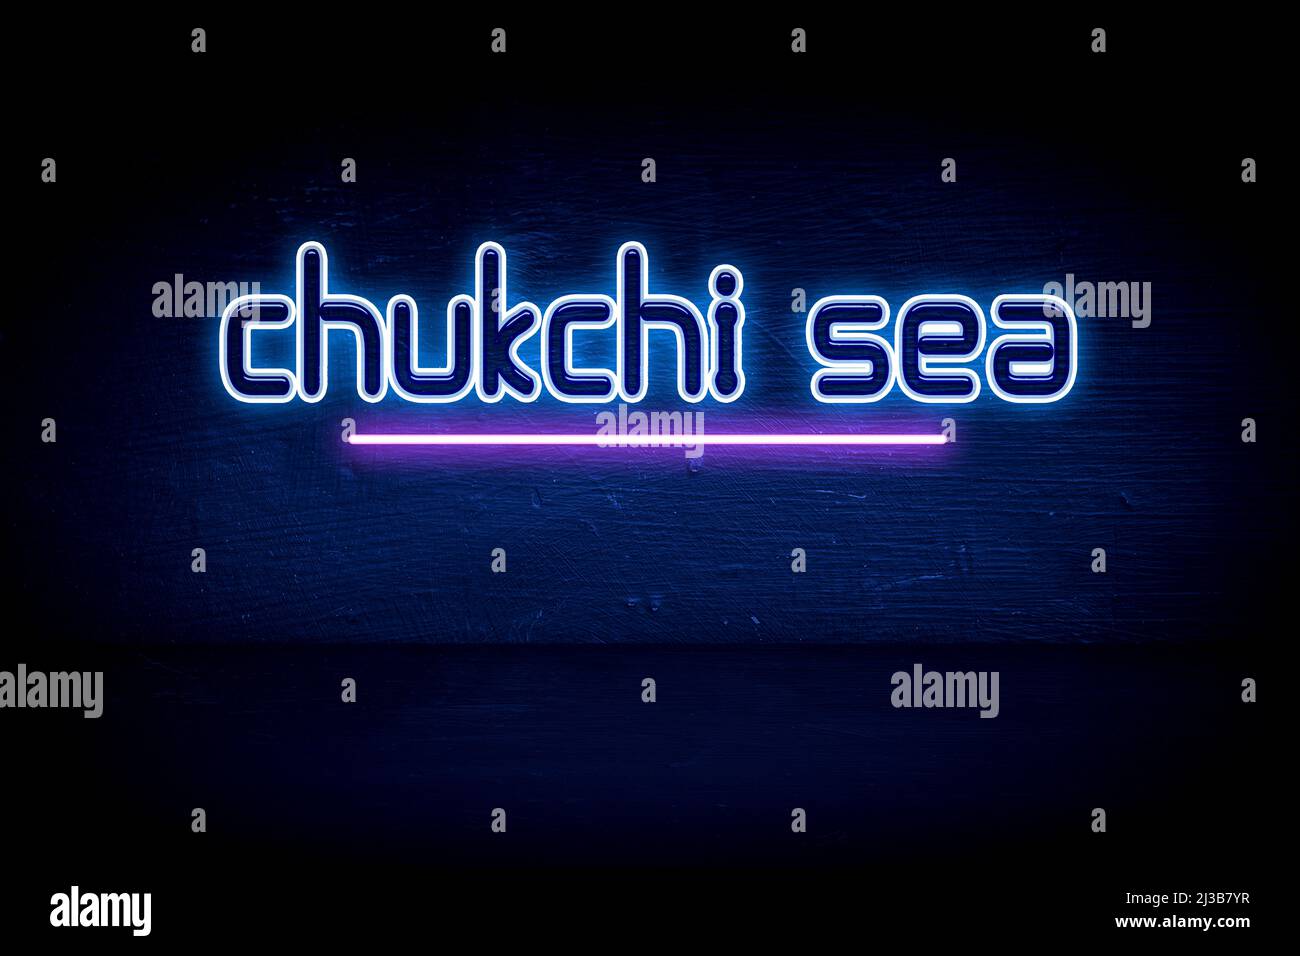 Chukchi Sea - panneau d'annonce au néon bleu Banque D'Images